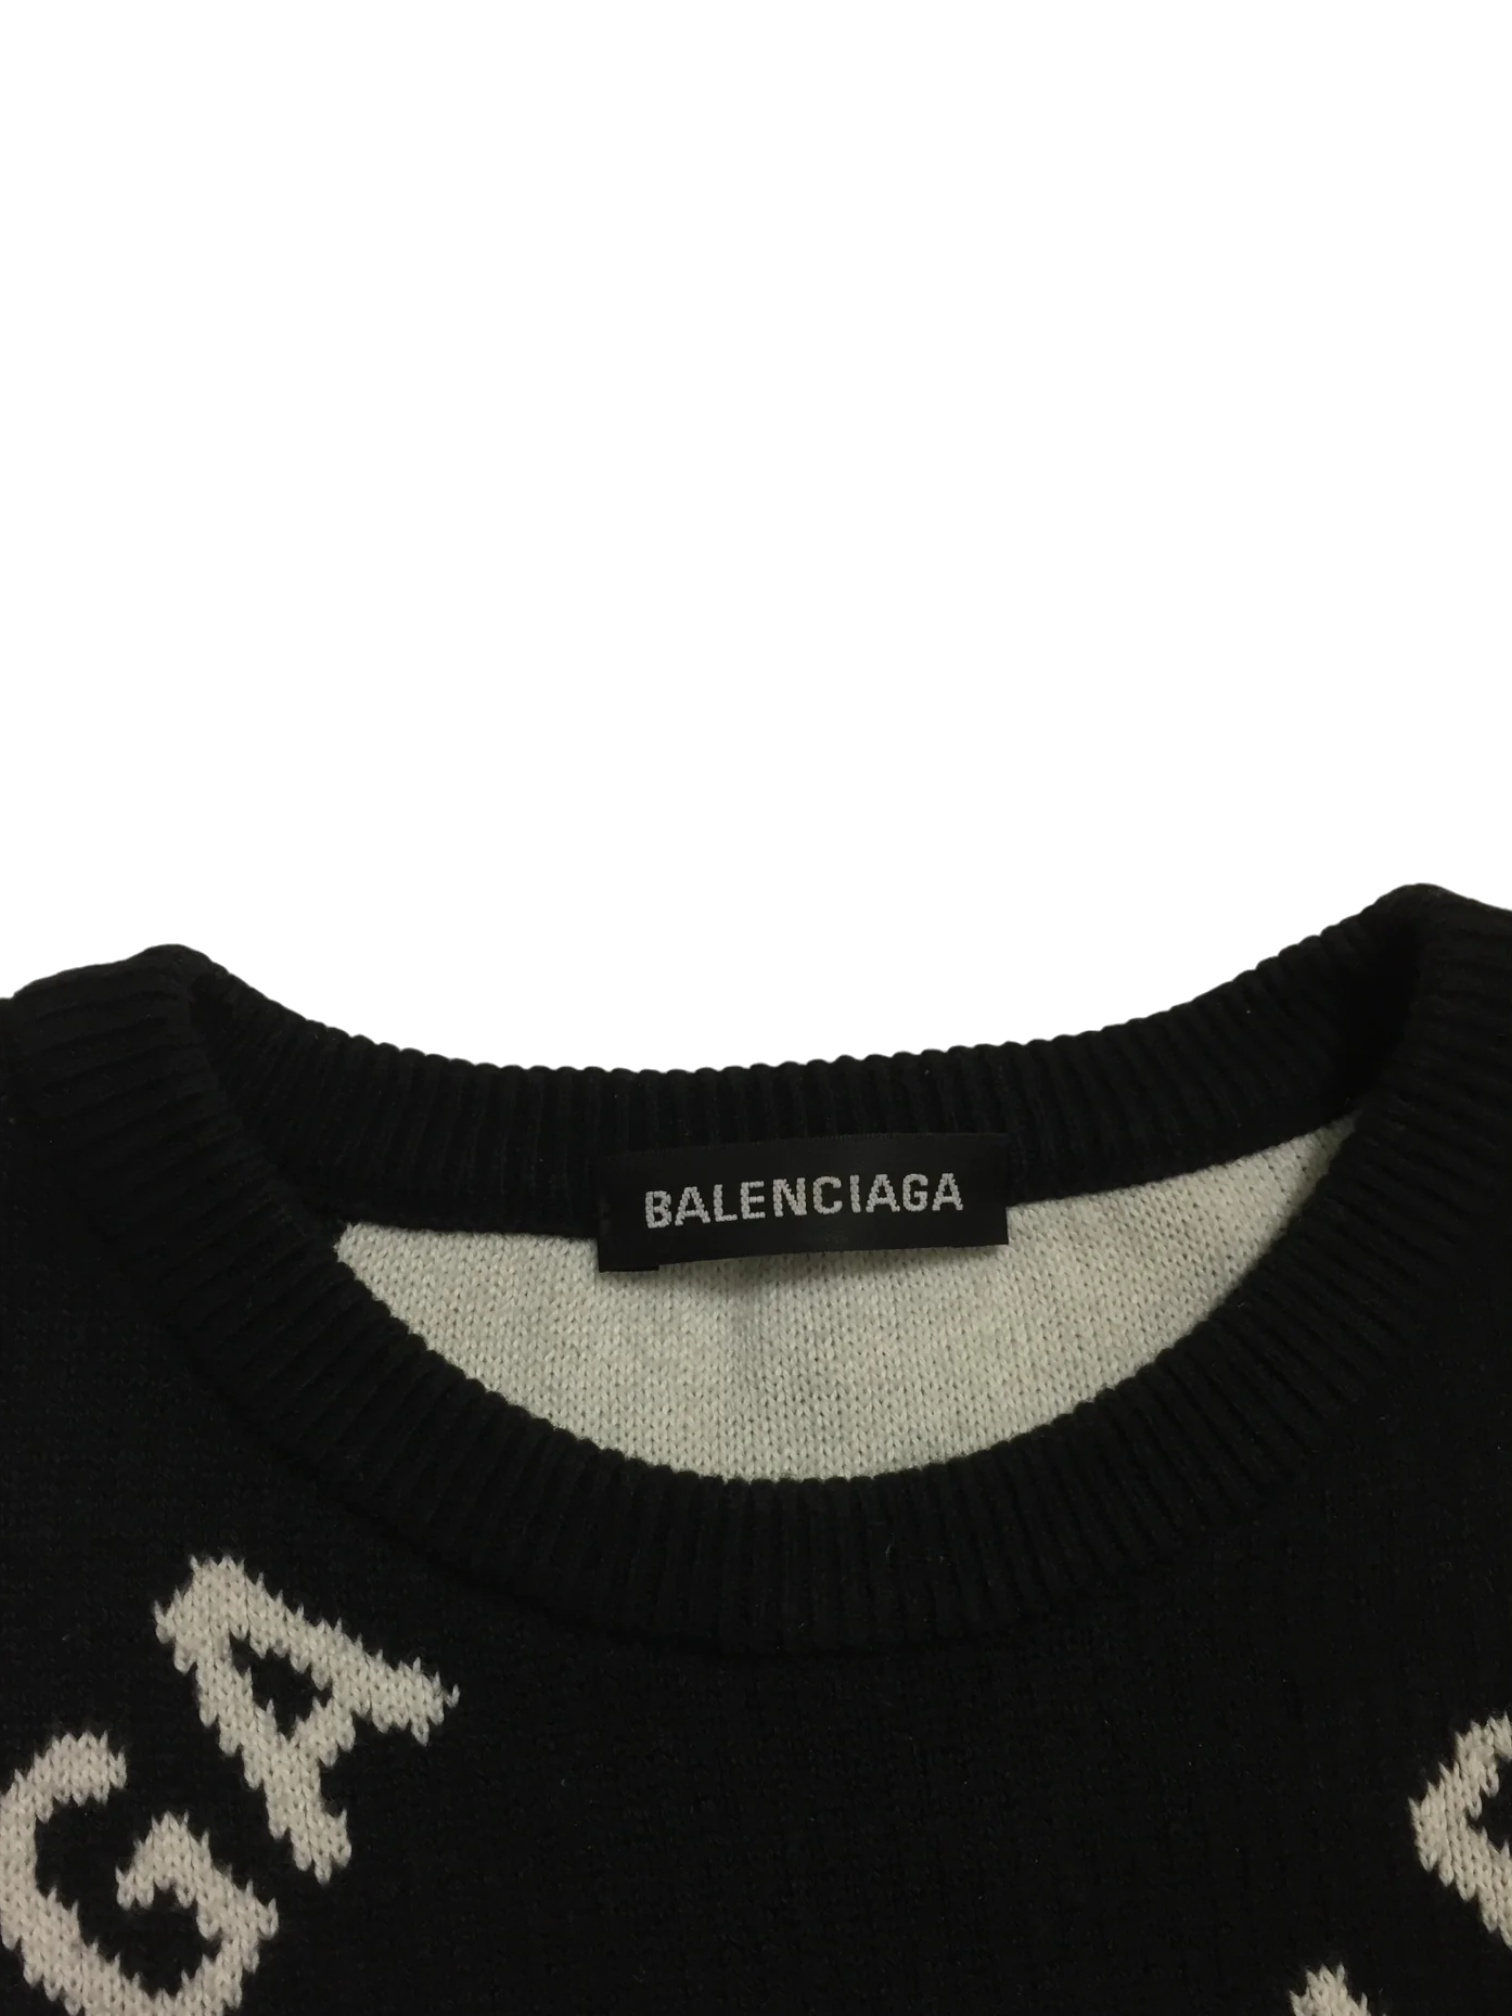 Balenciaga Black Knit Logo Crewneck